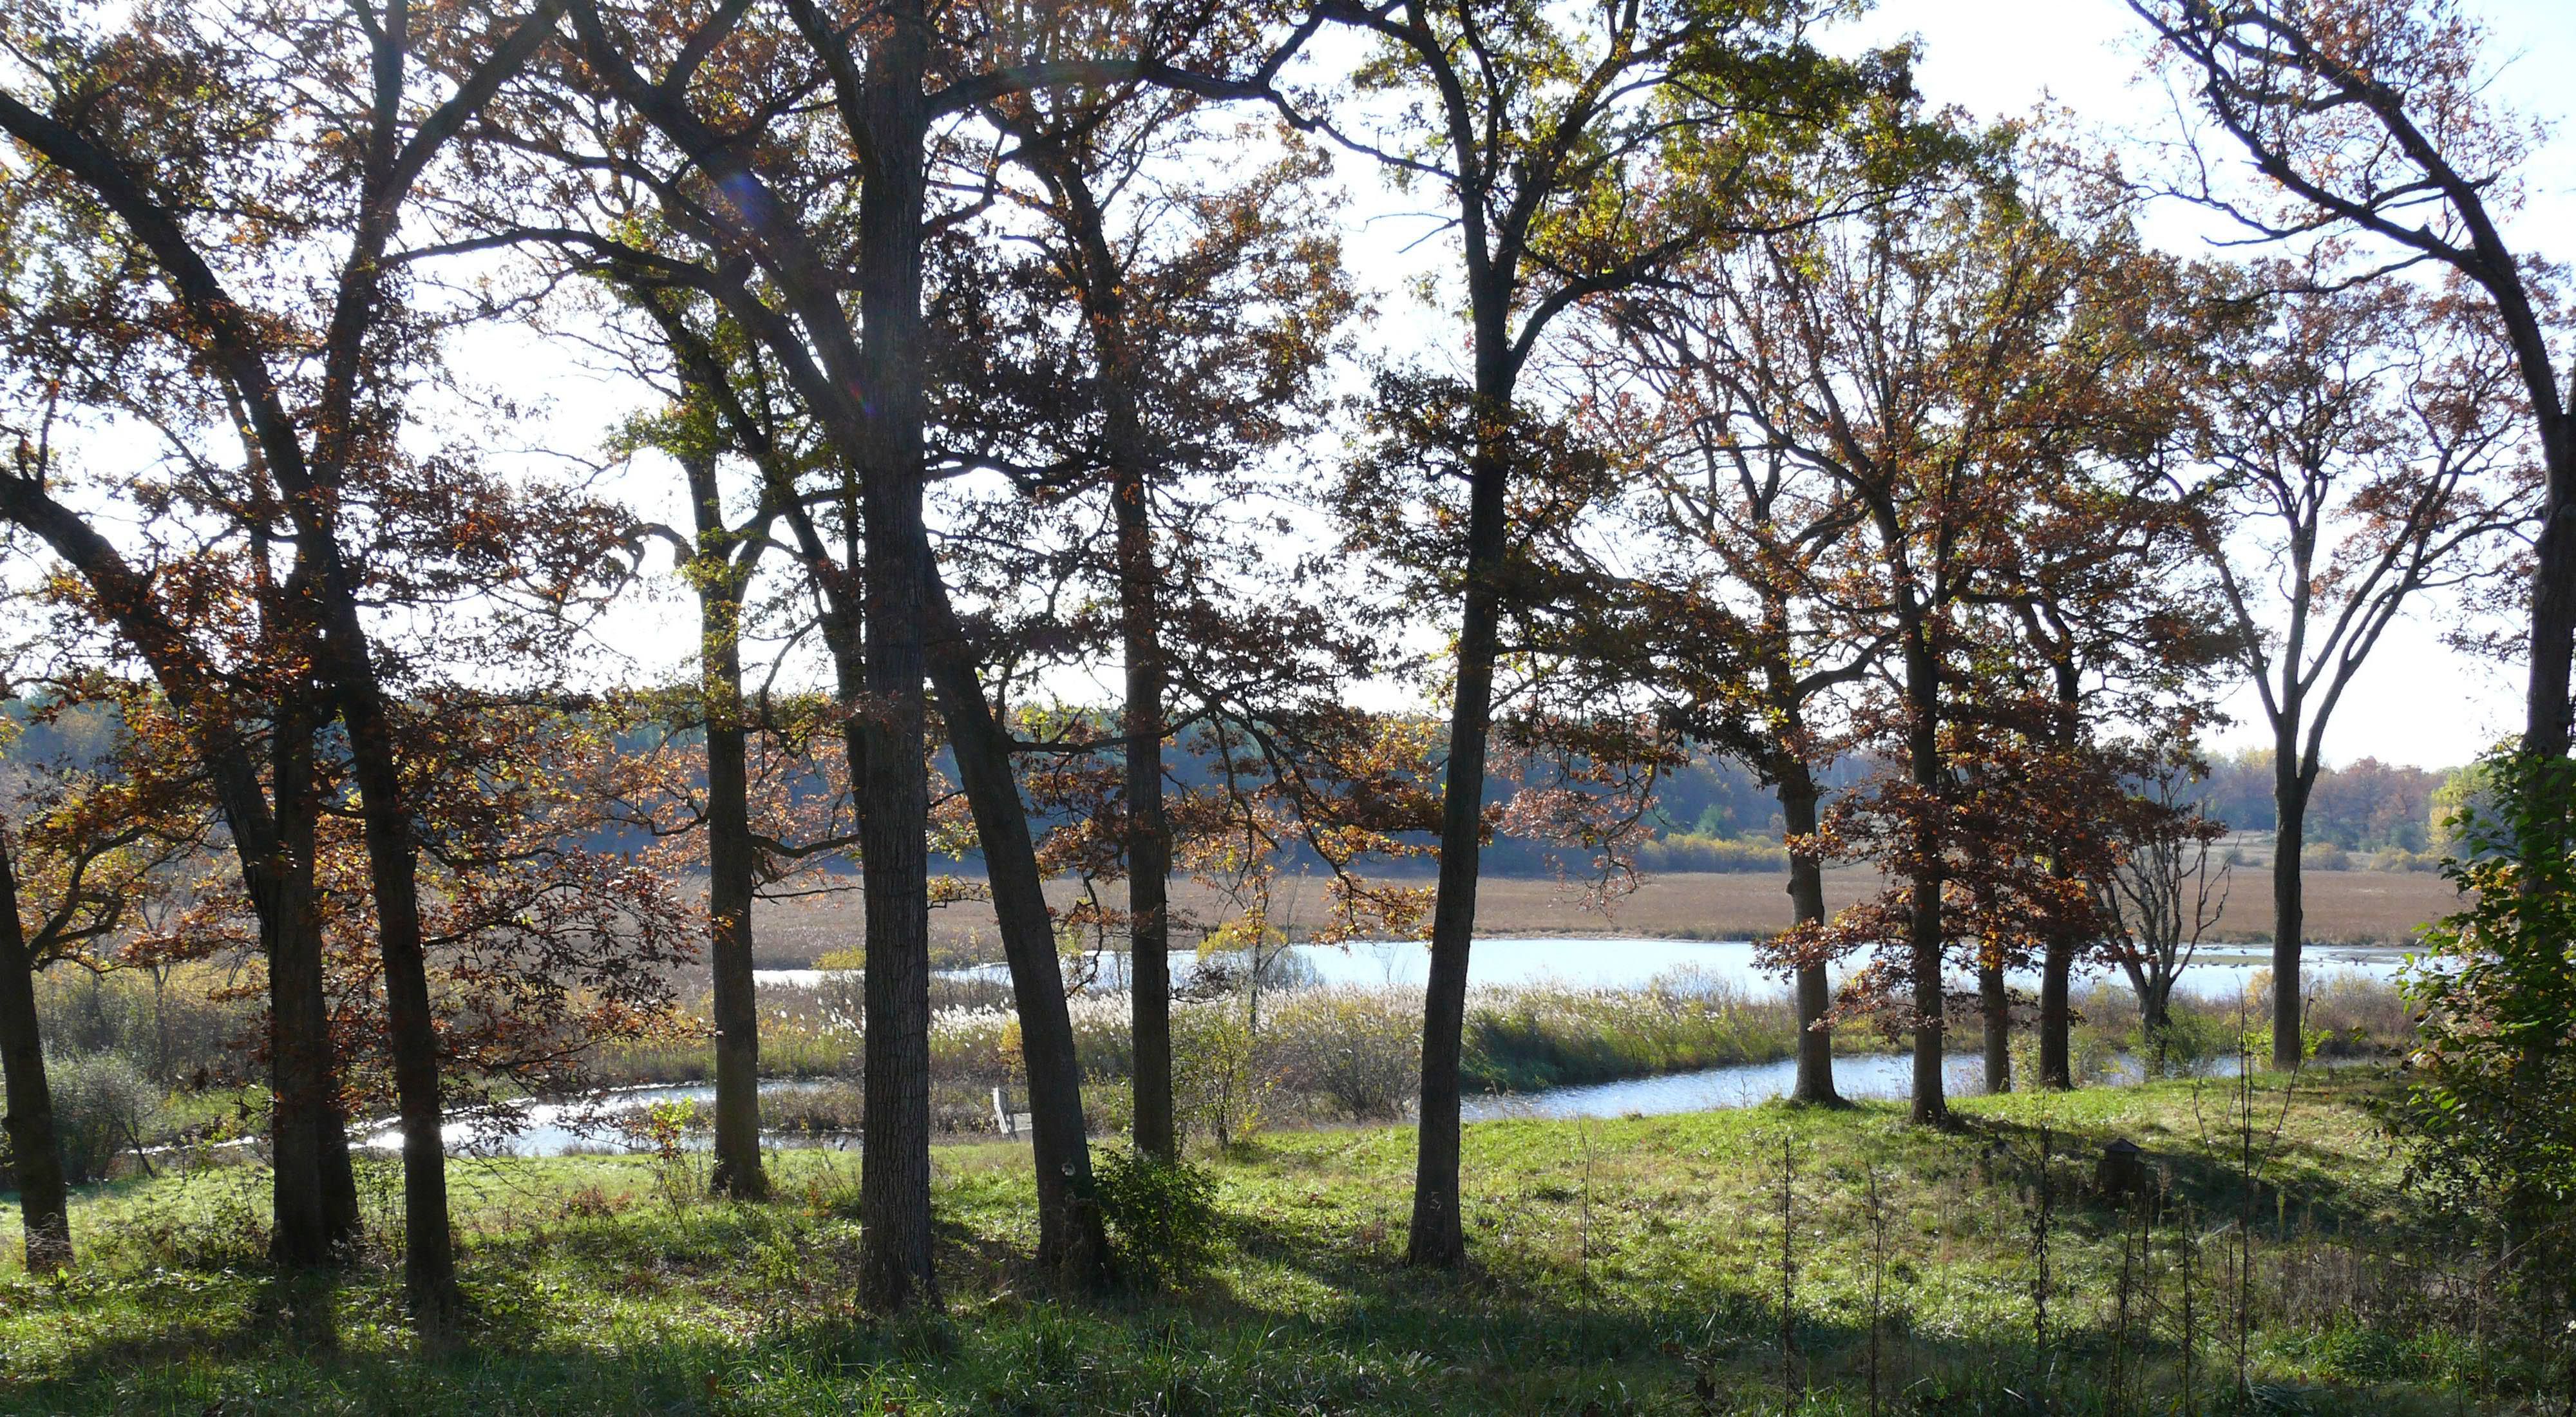 Oak trees near wetland area.